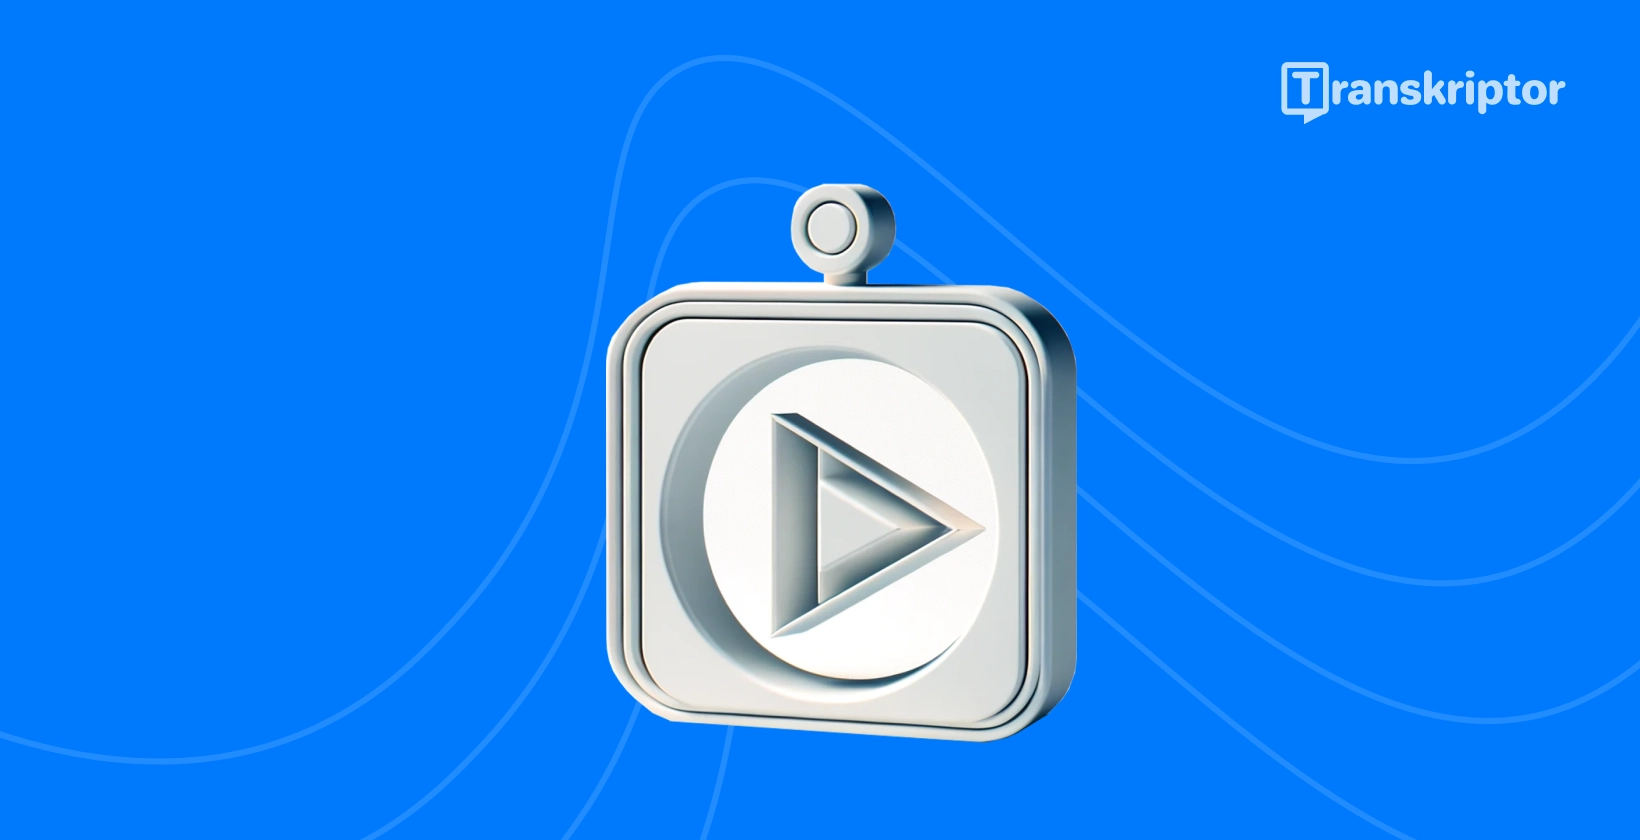 YouTube grafik panduan transkripsi, menampilkan ikon tombol putar untuk mewakili konten video.